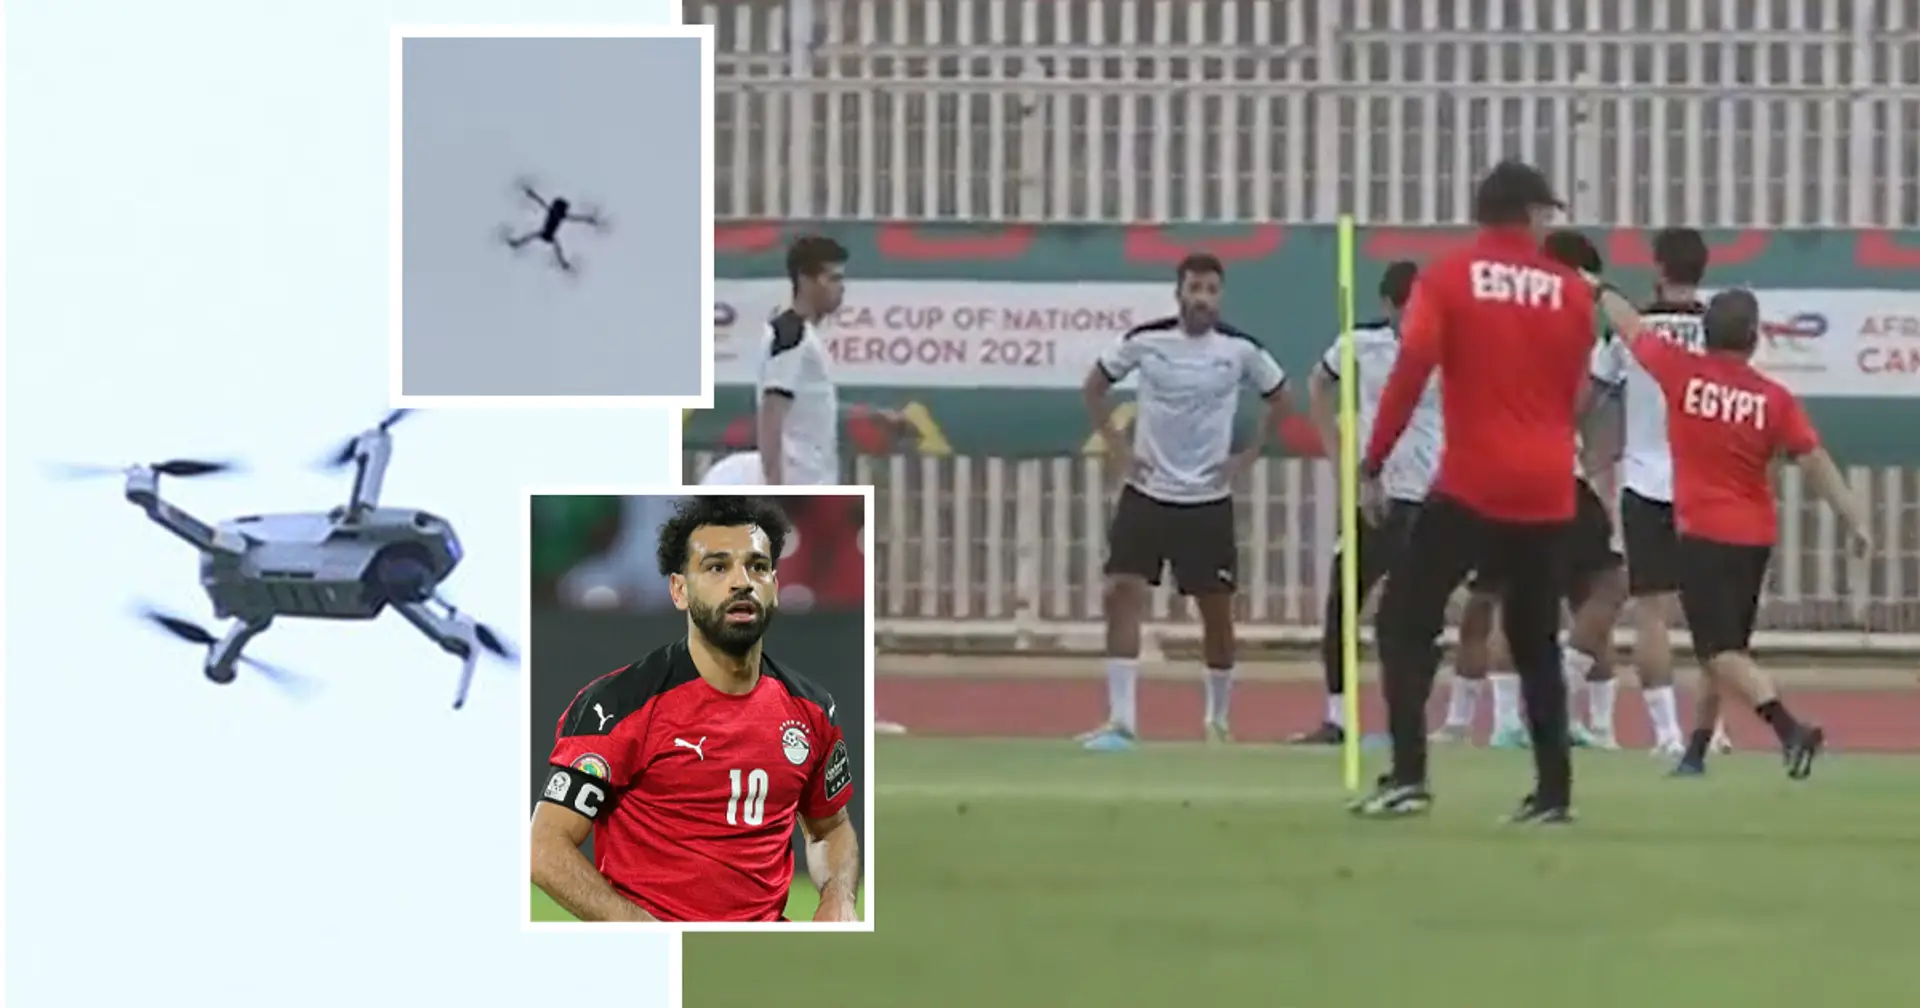 Folie à la CAN : le Cameroun a envoyé un drone pour espionner l'entraînement de l'Égypte, l'entraîneur interrompt la séance d'entraînement